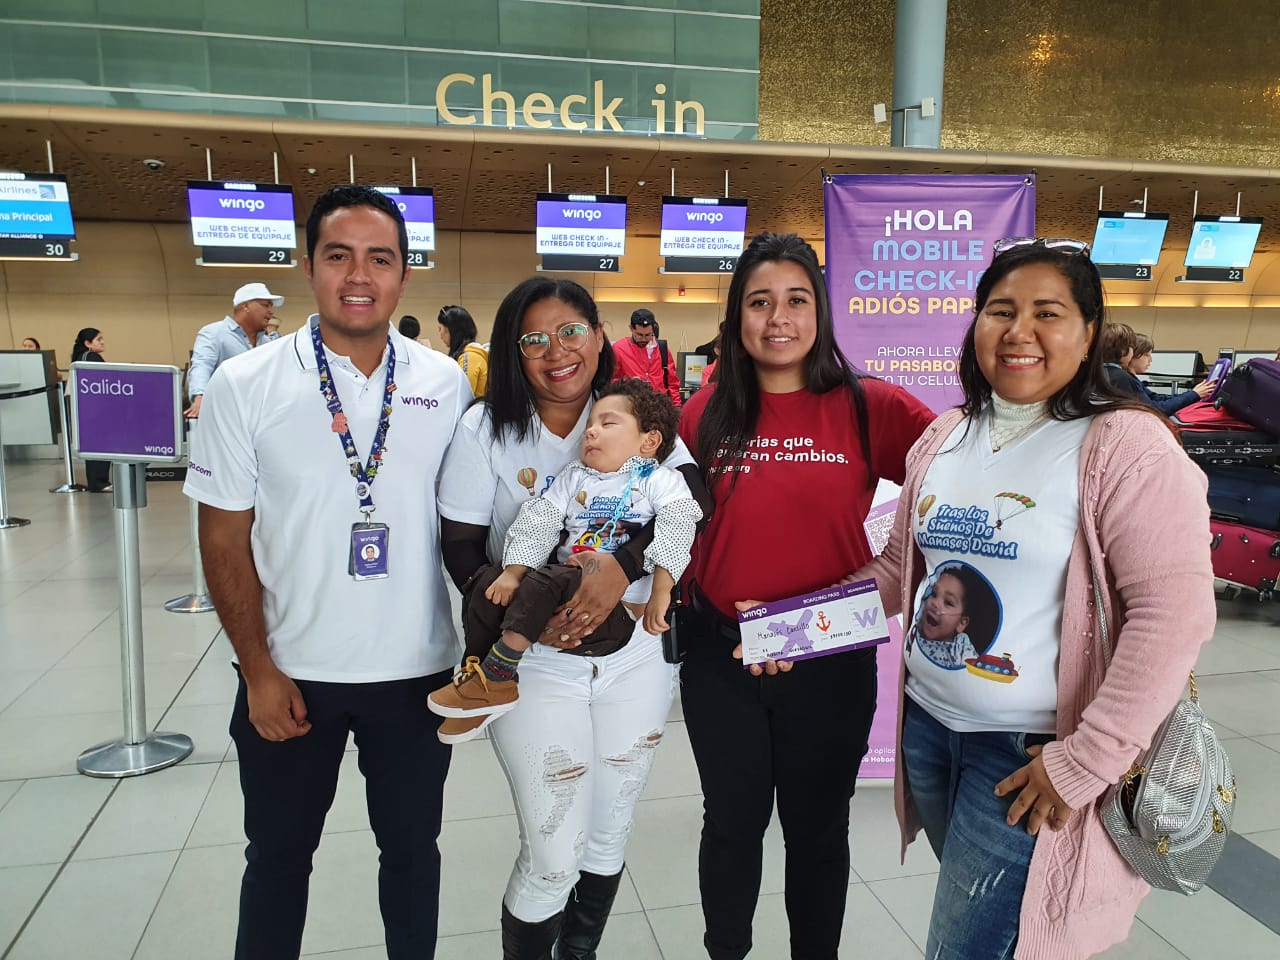 Manasés, un bebé con una rara enfermedad, y su mamá soñaban con viajar a Ecuador para recibir un tratamiento médico. Gracias al apoyo de más de 45 mil personas, una aerolínea conoció su historia y les donó los pasajes para que su viaje fuera una realidad.